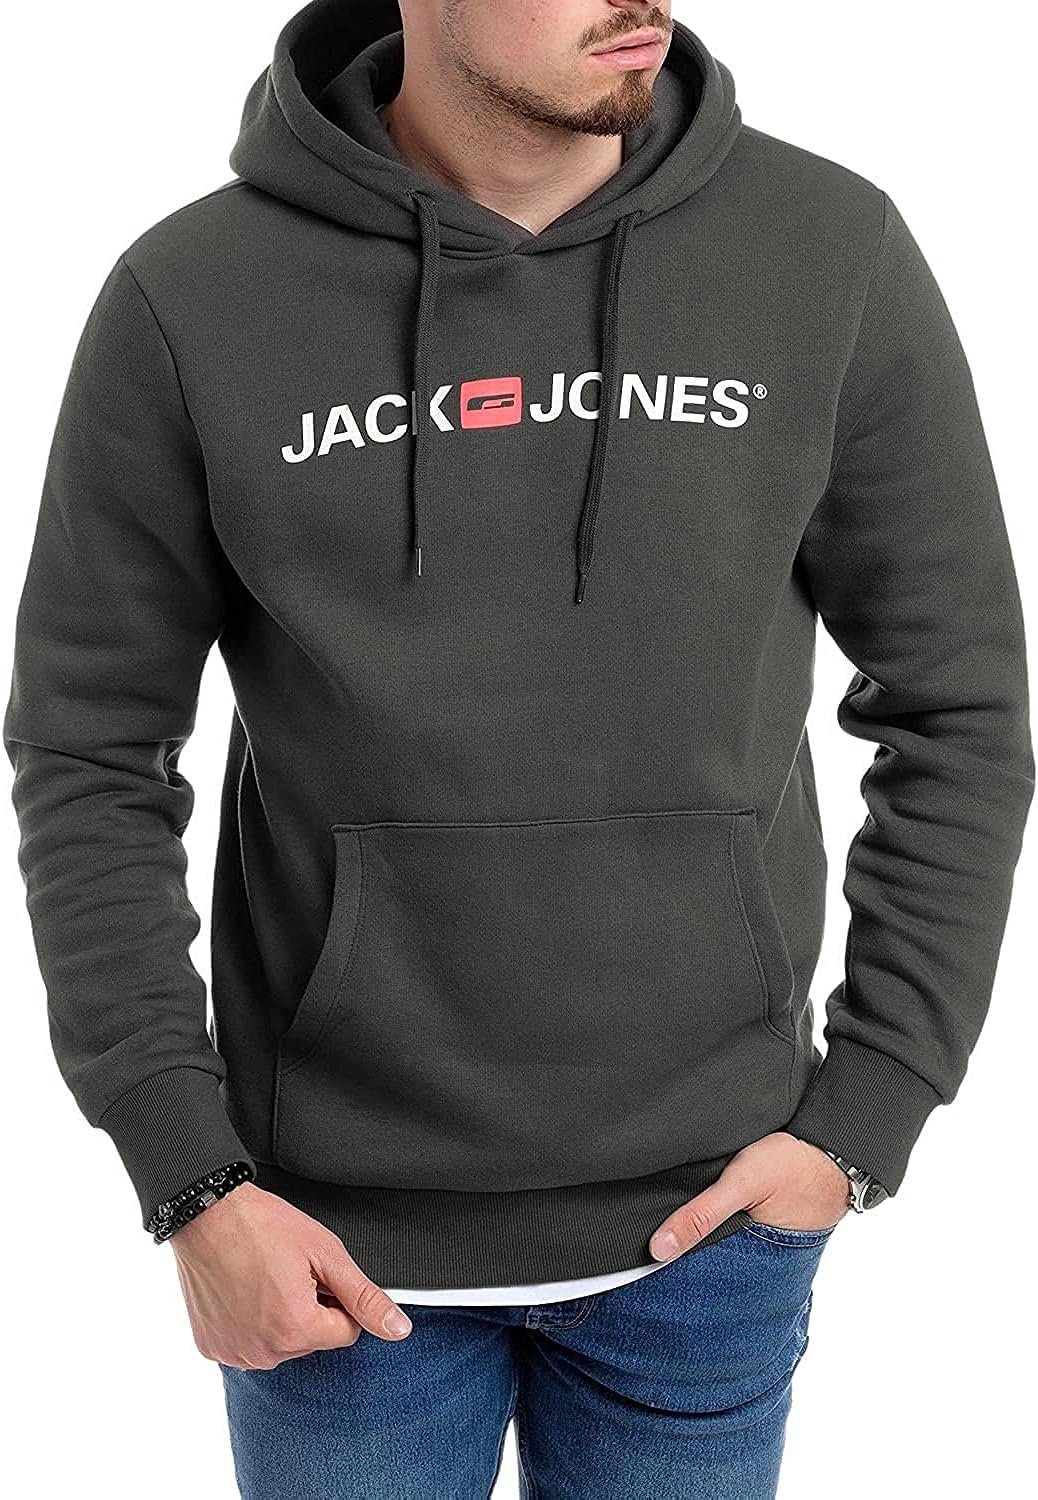 Jack Jones Kapuzenpullover 2er Pack Hoodie Sweat Herren S M L XL